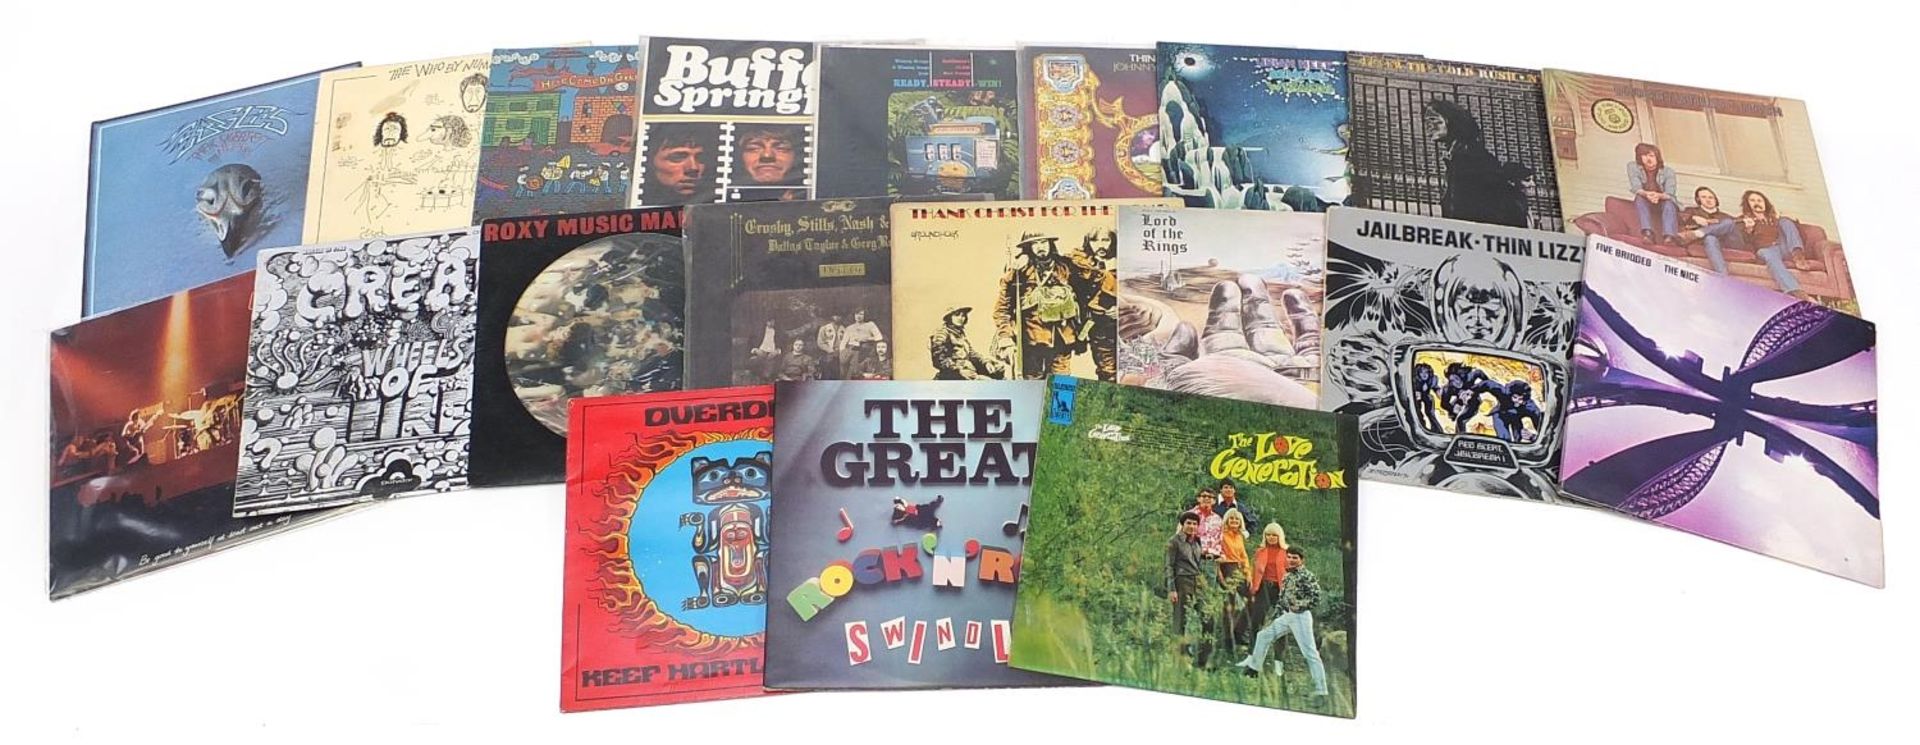 Vinyl LP records including Buffalo Springfield on Atlantic Mono 587070, Thin Lizzy, Uriah Heap, Neil